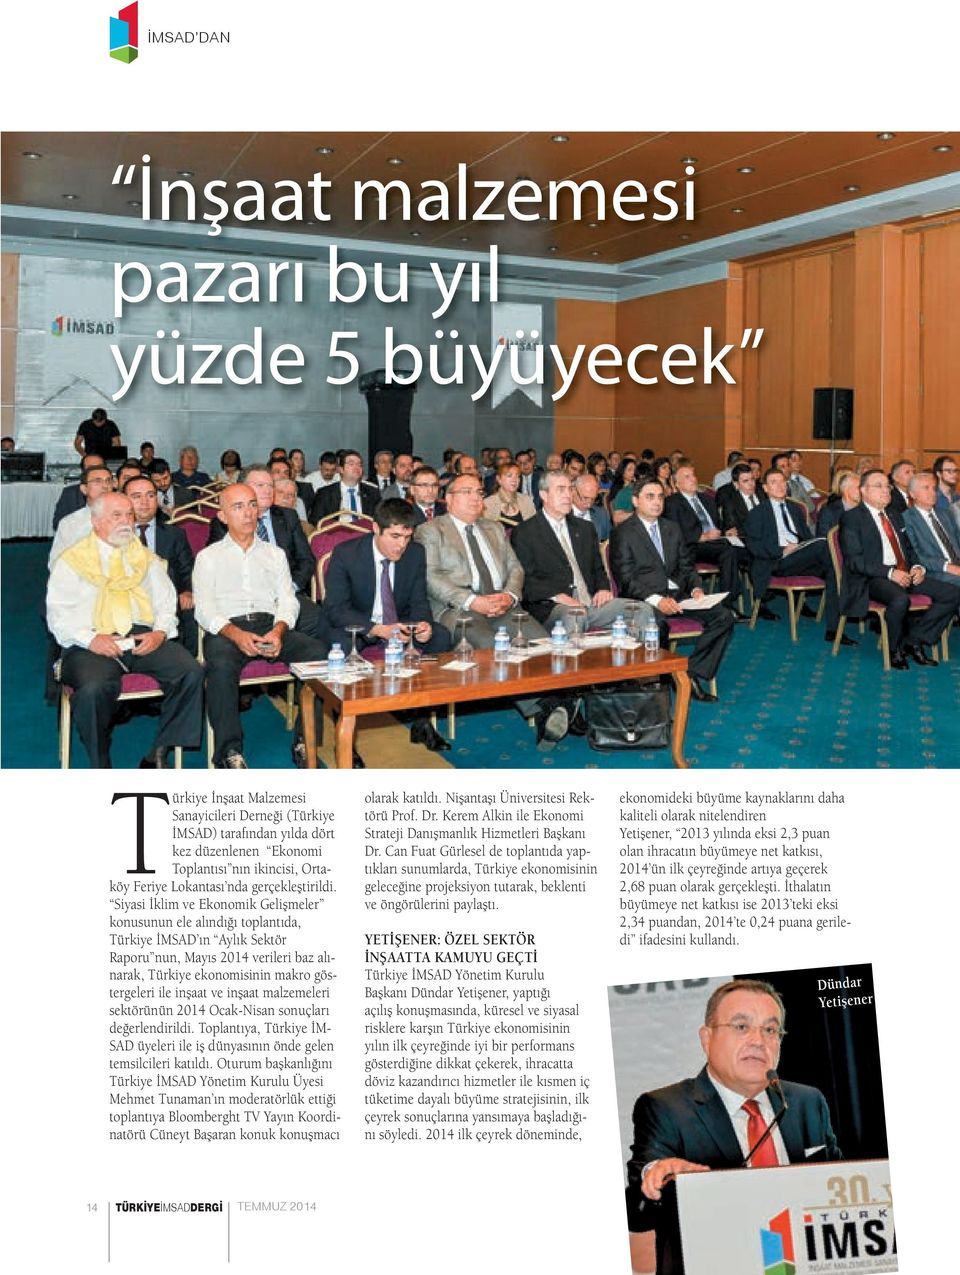 Siyasi İklim ve Ekonomik Gelişmeler konusunun ele alındığı toplantıda, Türkiye İMSAD ın Aylık Sektör Raporu nun, Mayıs 2014 verileri baz alınarak, Türkiye ekonomisinin makro göstergeleri ile inşaat